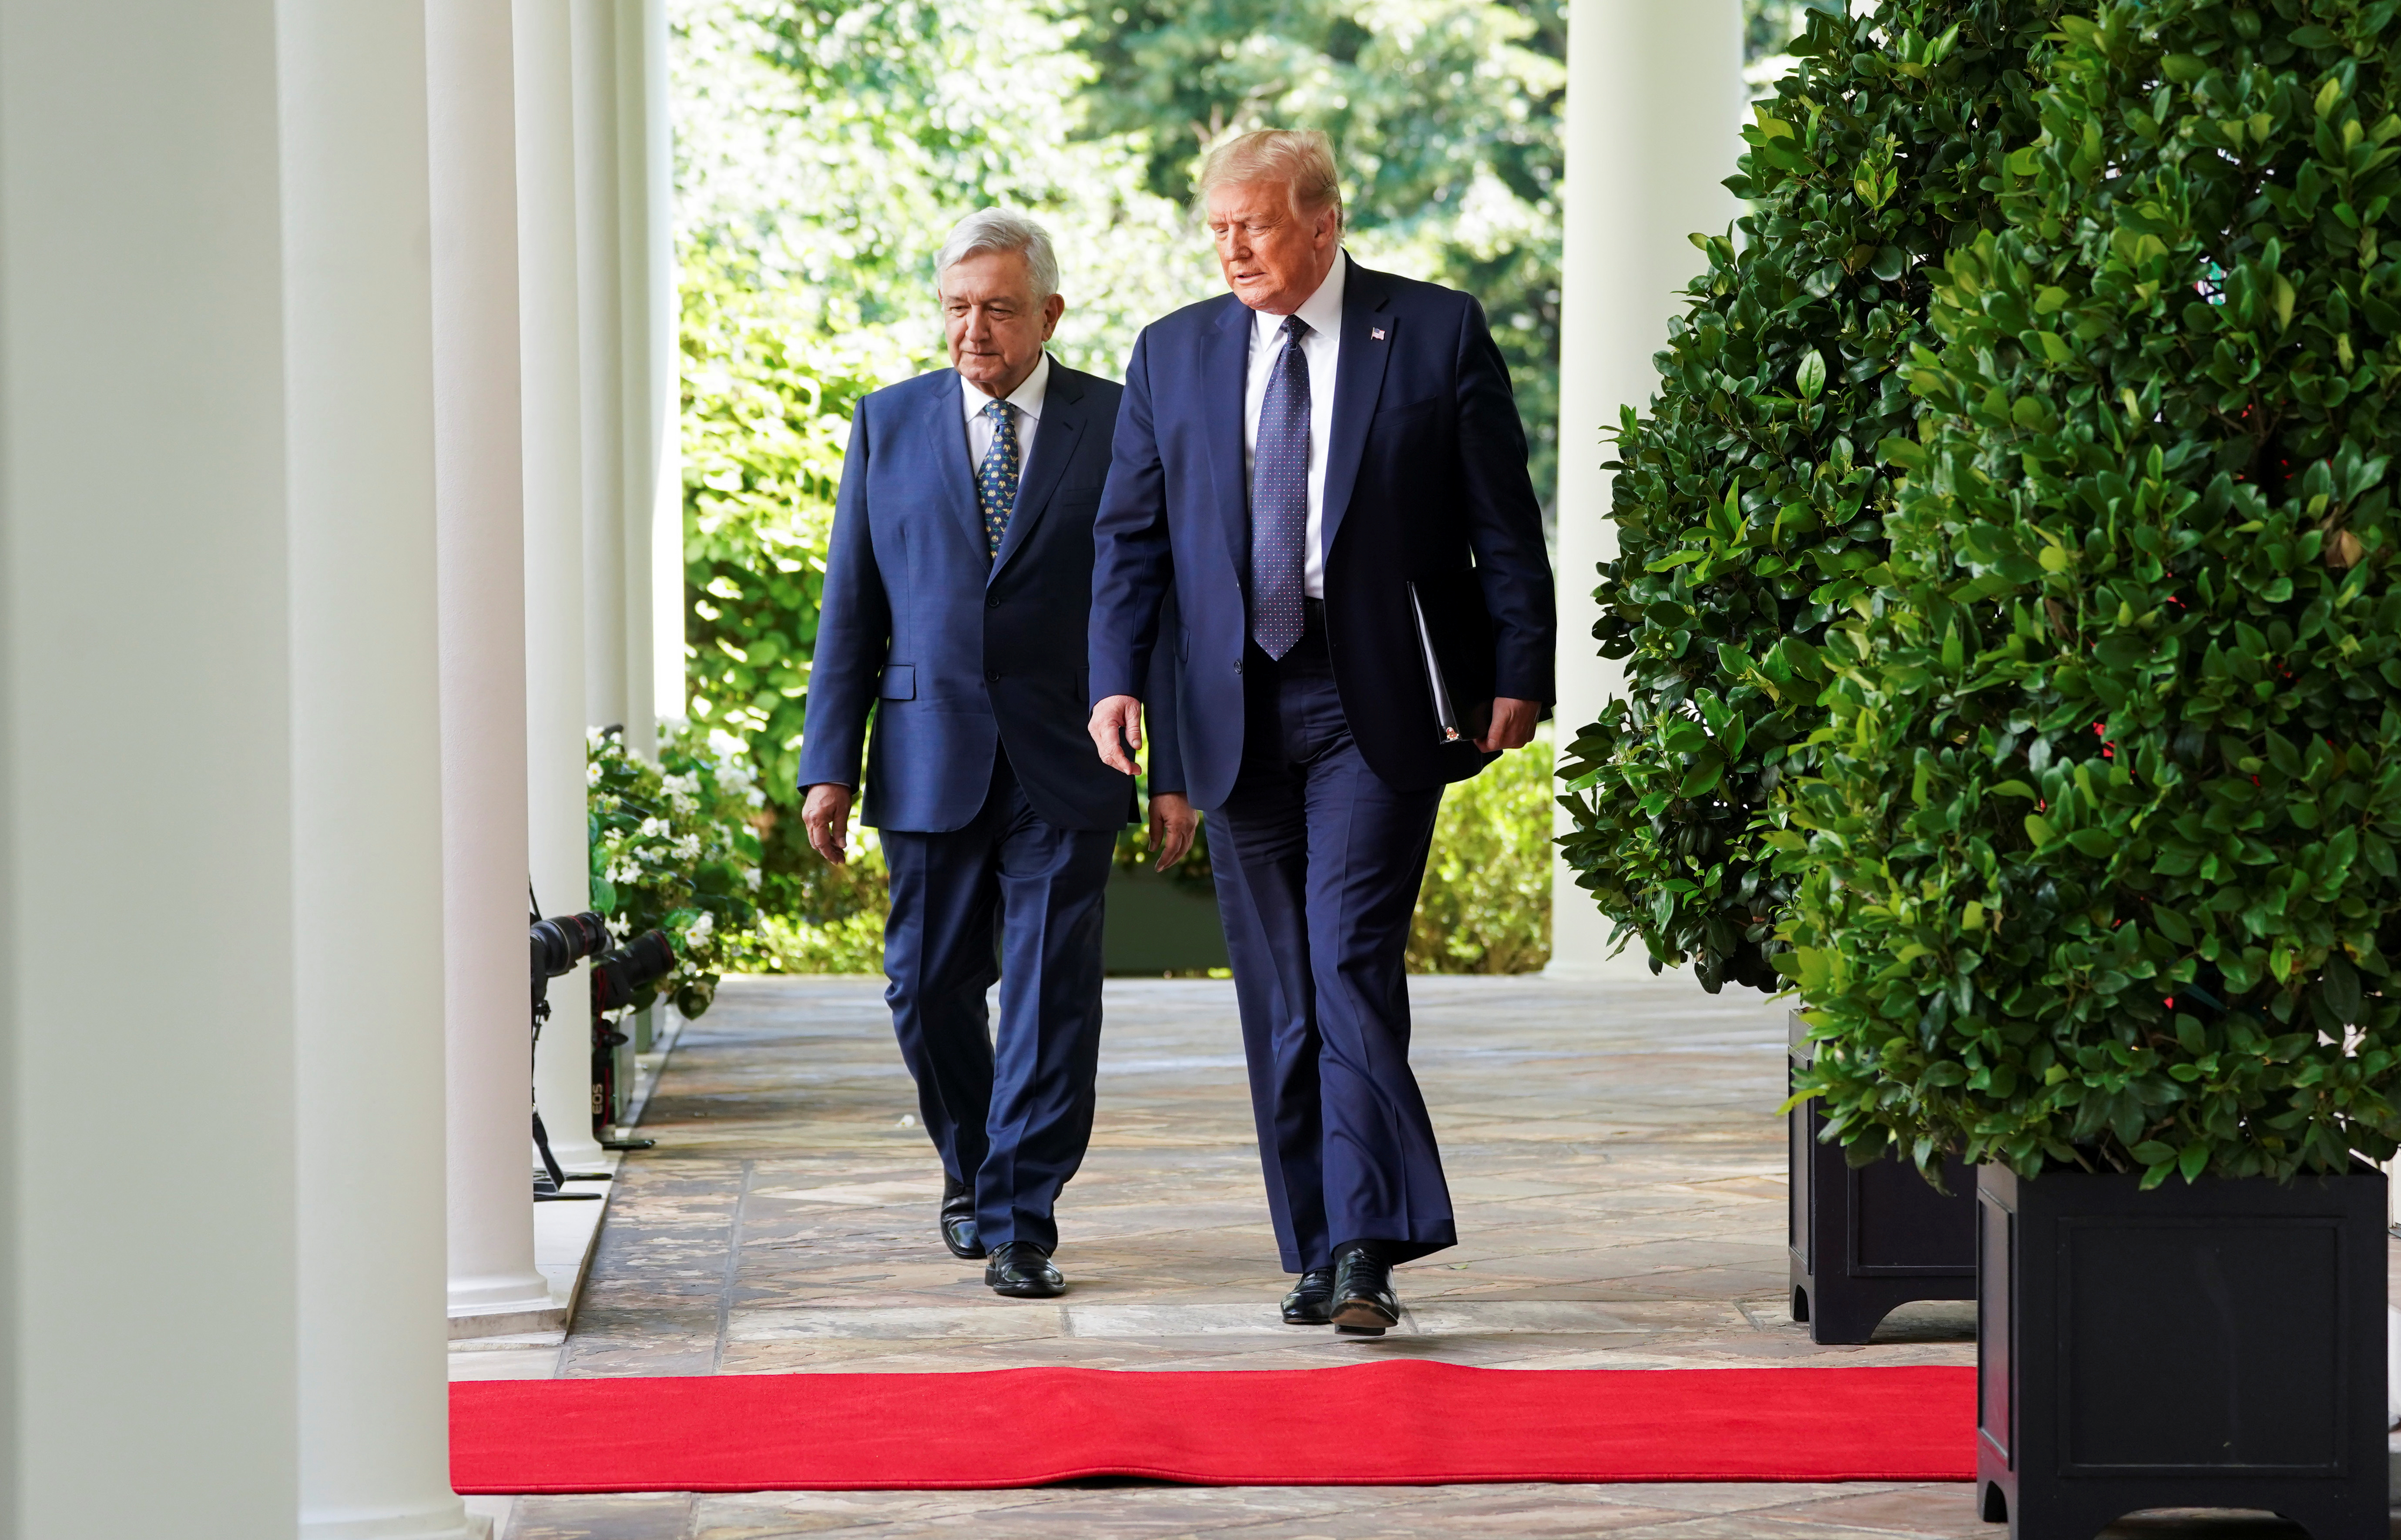 El presidente de los Estados Unidos, Donald Trump, conduce al presidente de México, Andrés Manuel López Obrador, por el ala oeste al Jardín de las Rosas en la Casa Blanca en Washington, EE. UU., 8 de julio de 2020. (Foto: REUTERS / Kevin Lamarque)